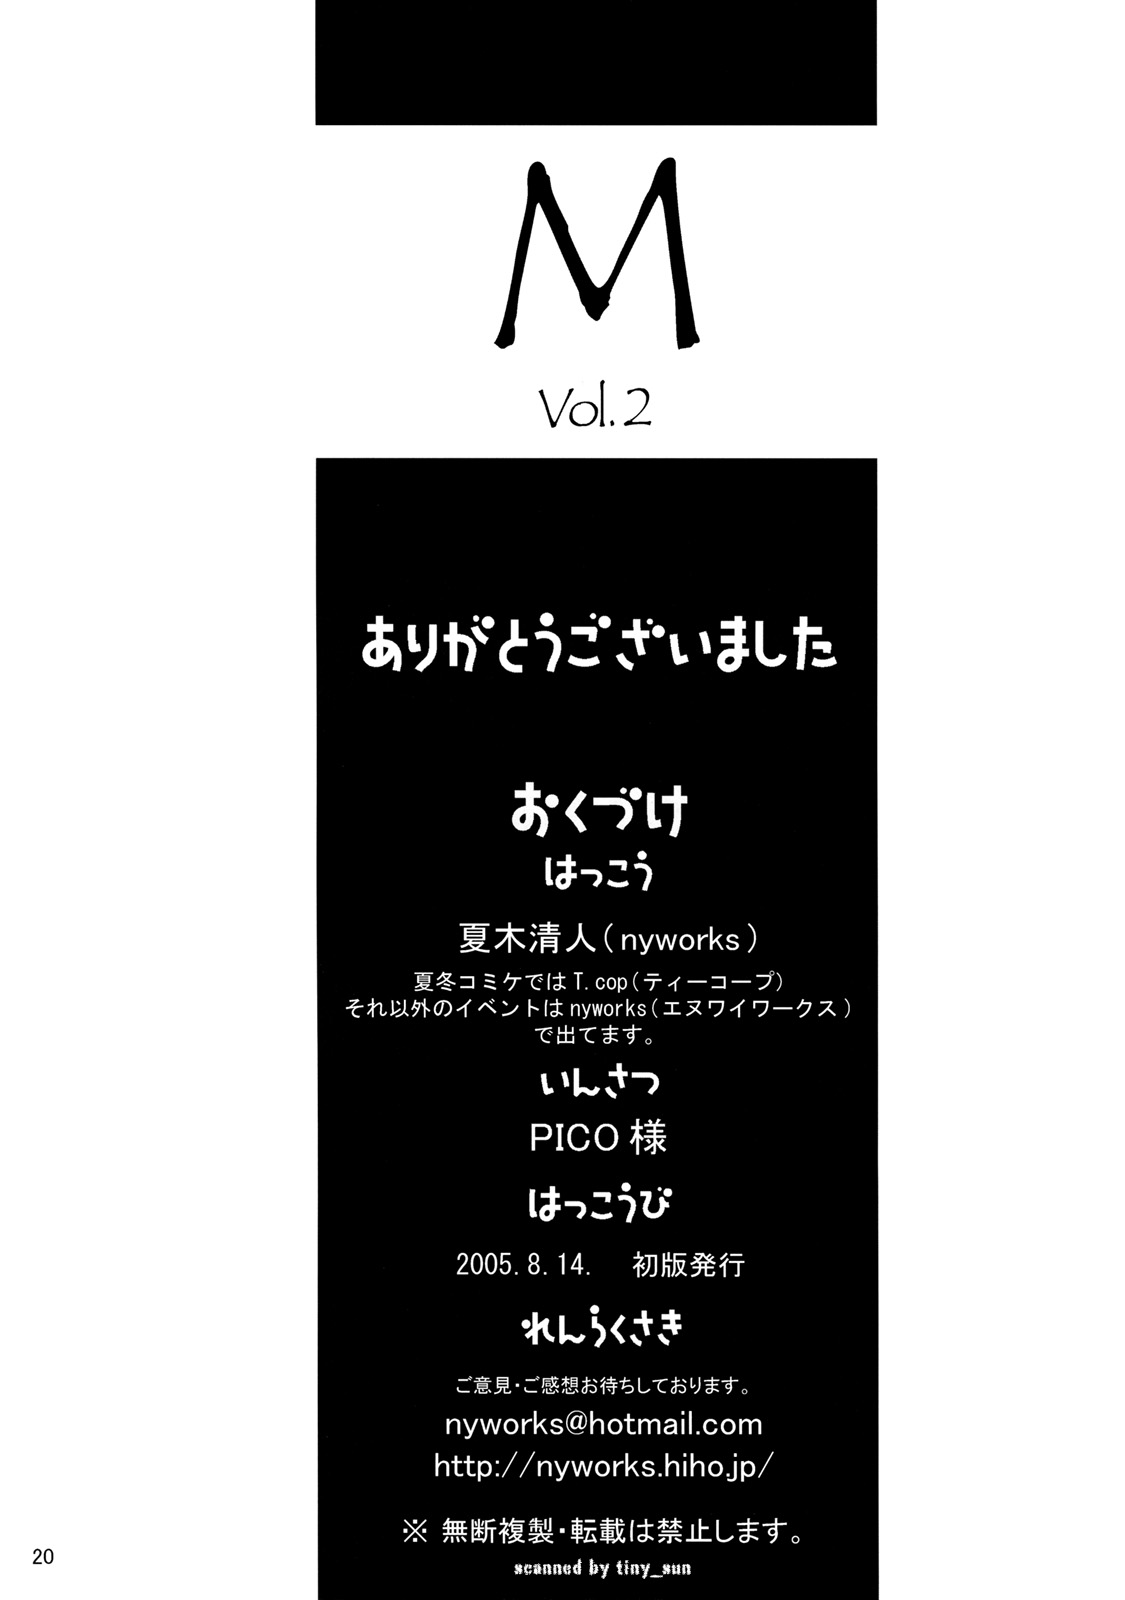 【ナイワークス】Mvol.2